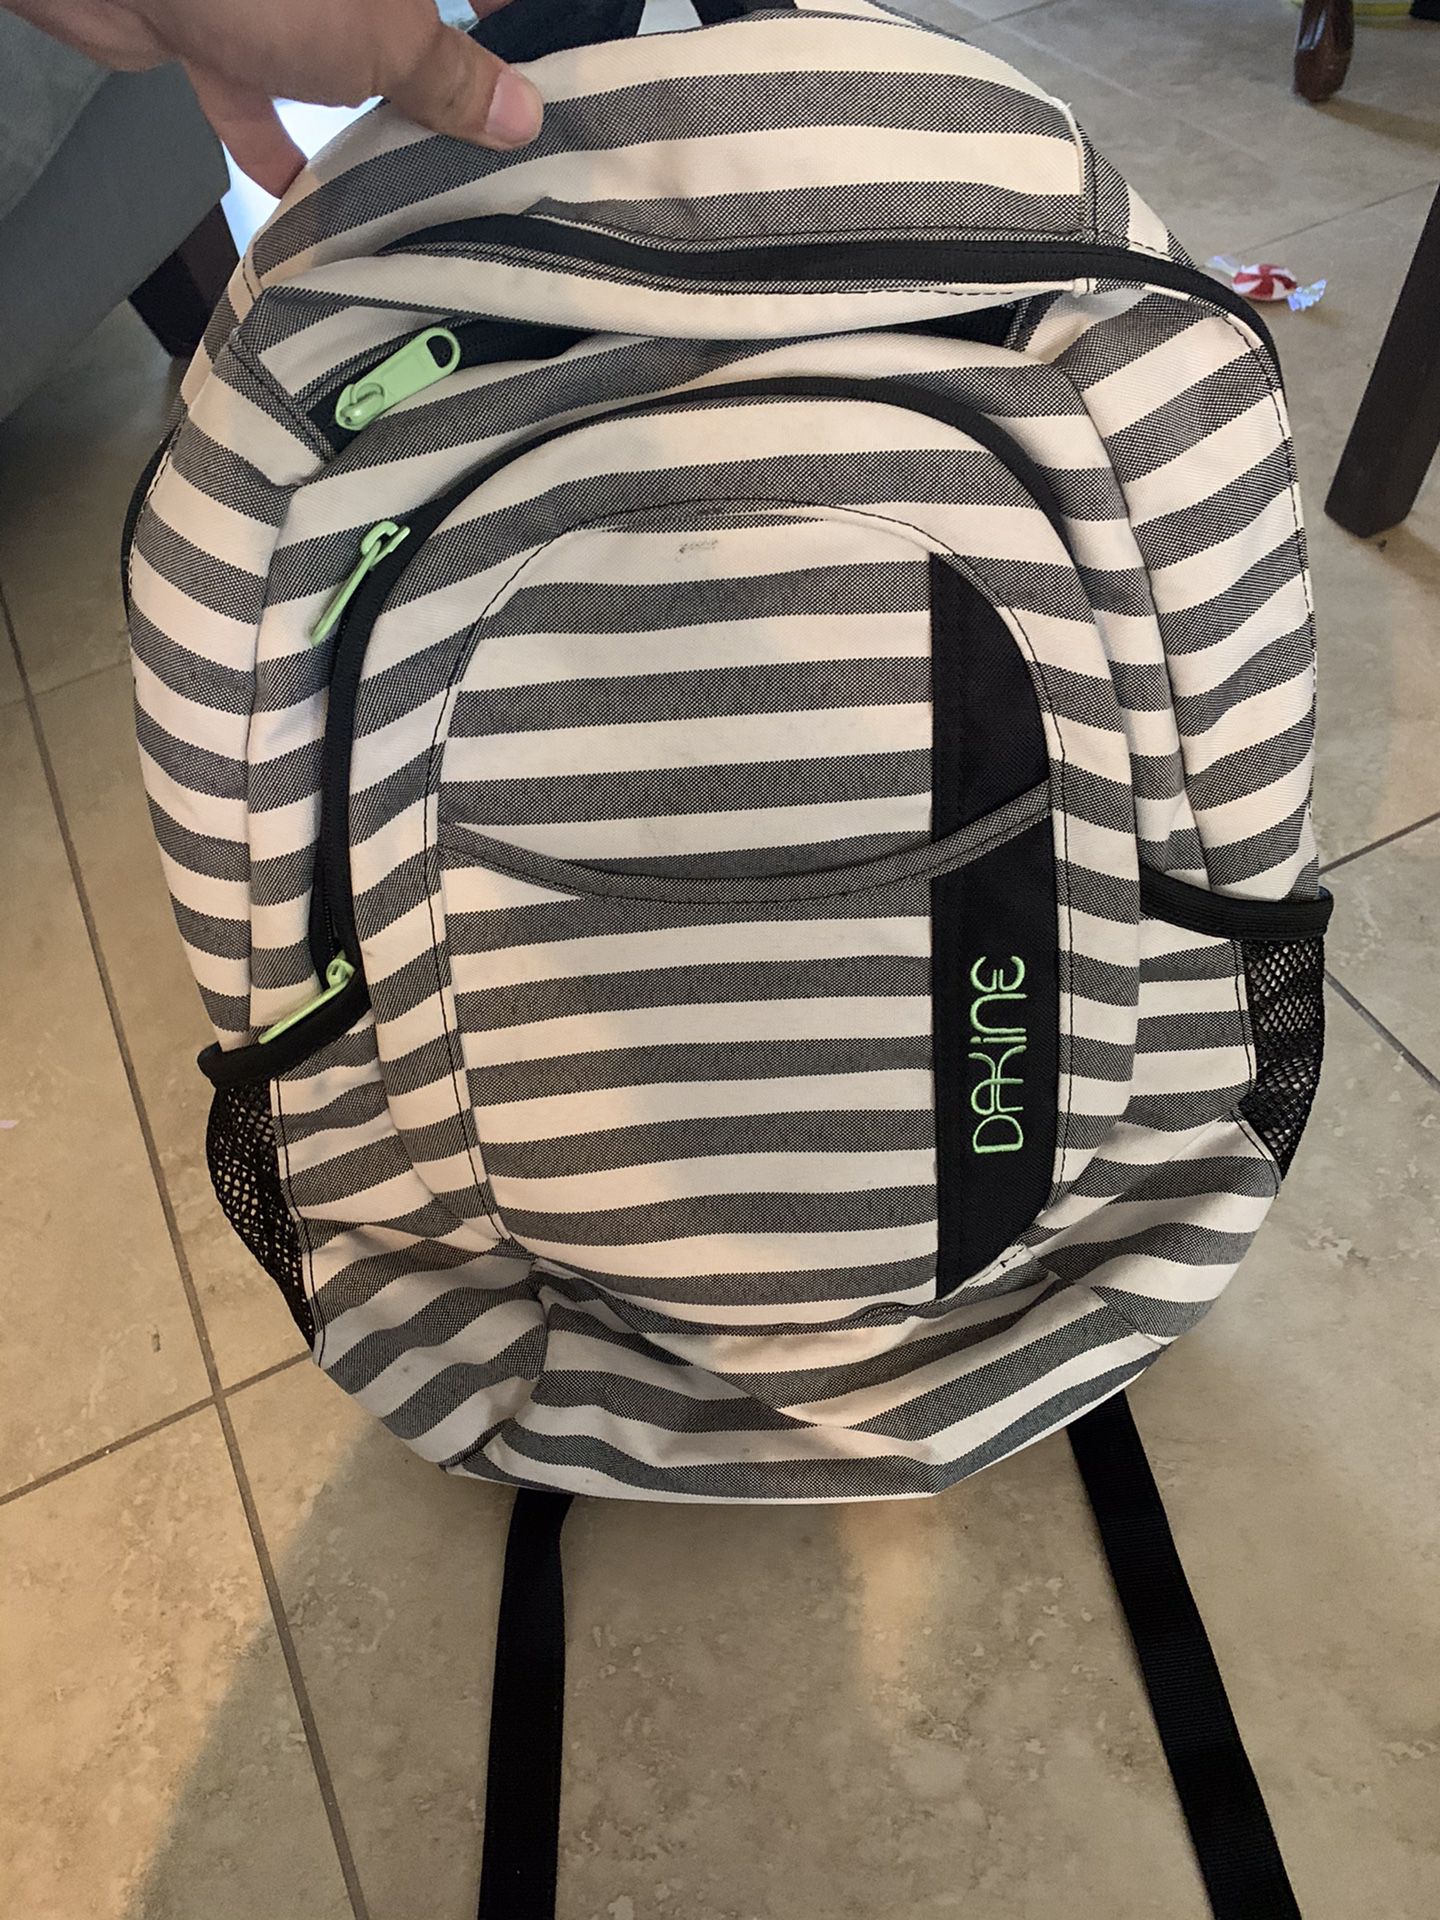 Dakine backpack